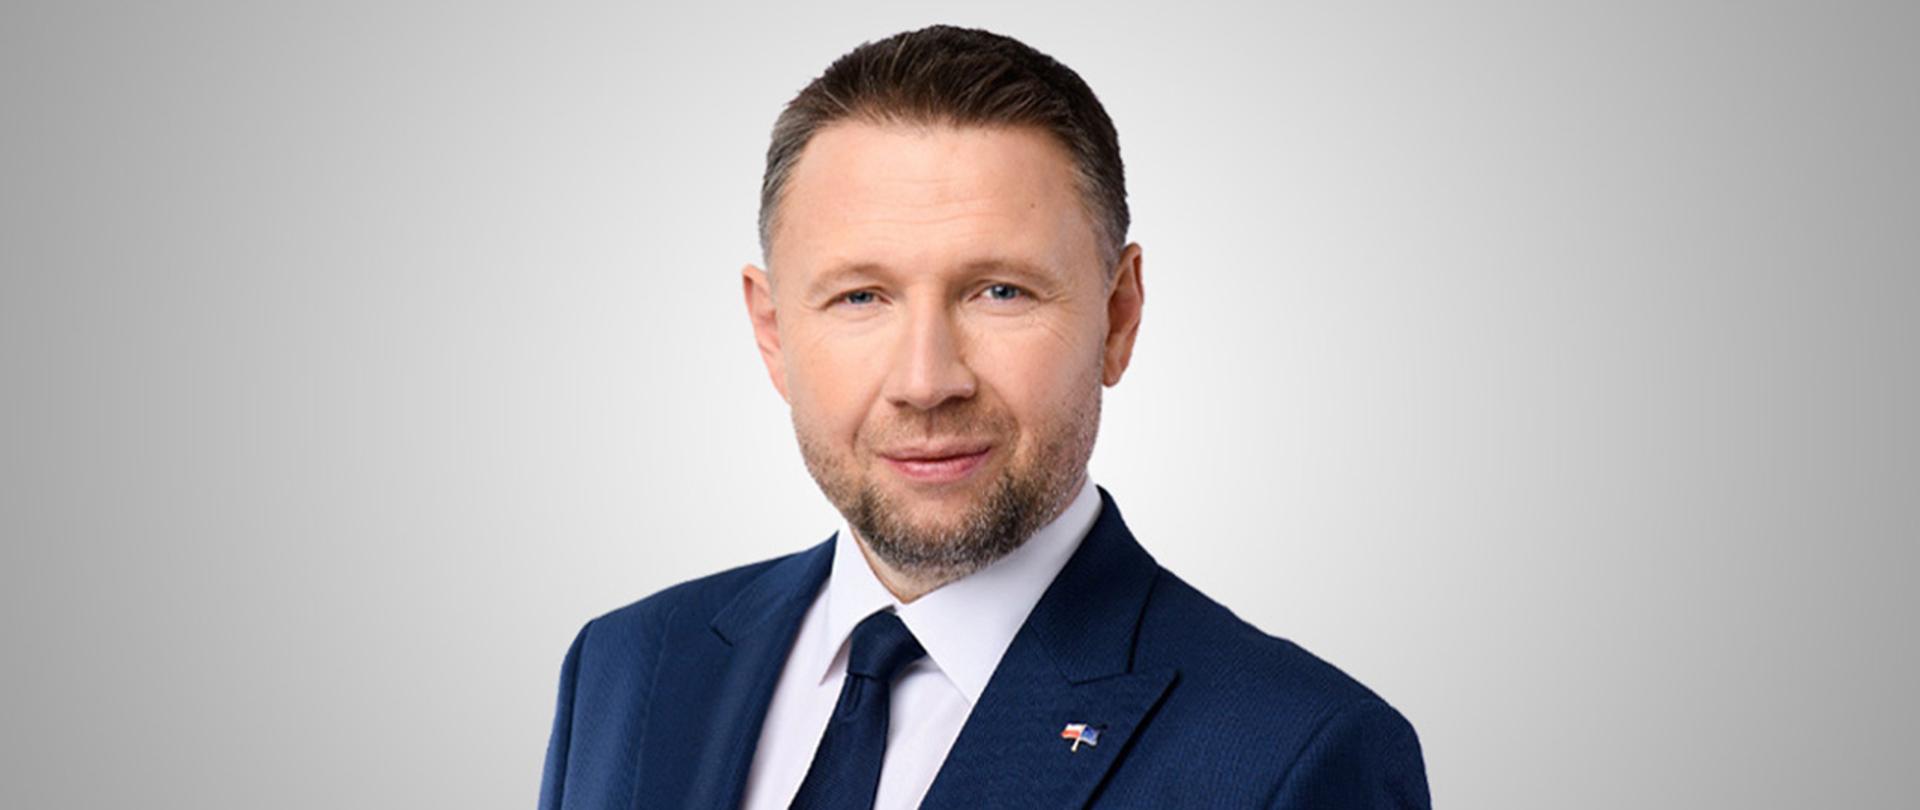 Minister Spraw Wewnętrznych i Administracji Marcin Kierwiński